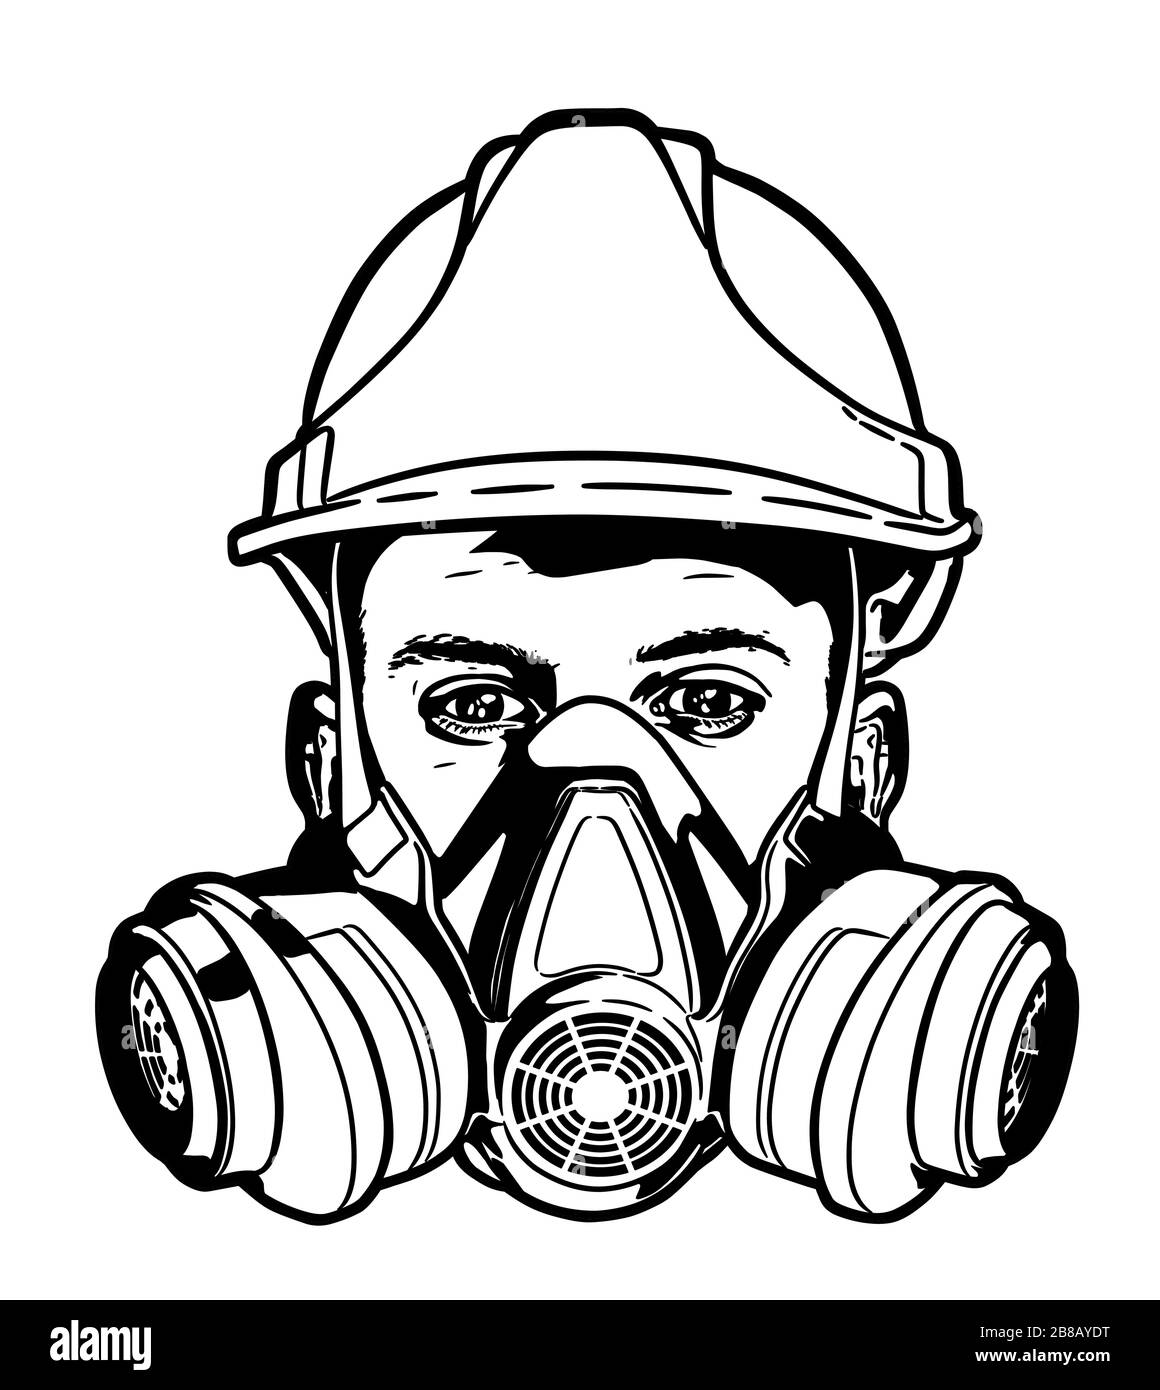 Visage humain avec masque à gaz et croquis vecteur hard hat Illustration de Vecteur